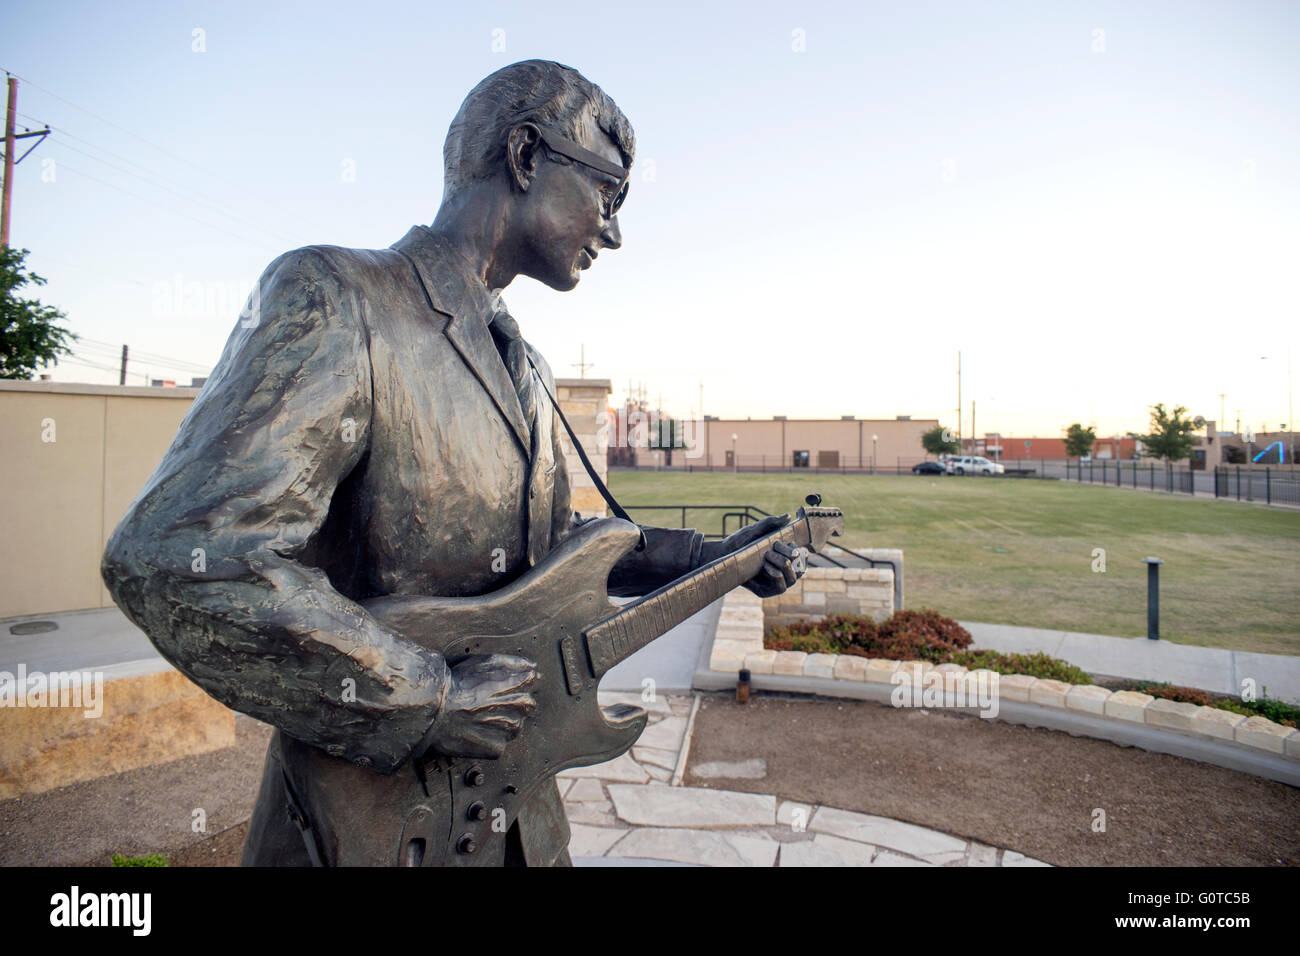 Statue de Buddy Holly à Lubbock, Texas. Charles Hardin Holley (7 septembre 1936 - 3 février 1959), connu sous le nom de Buddy Holly. Banque D'Images